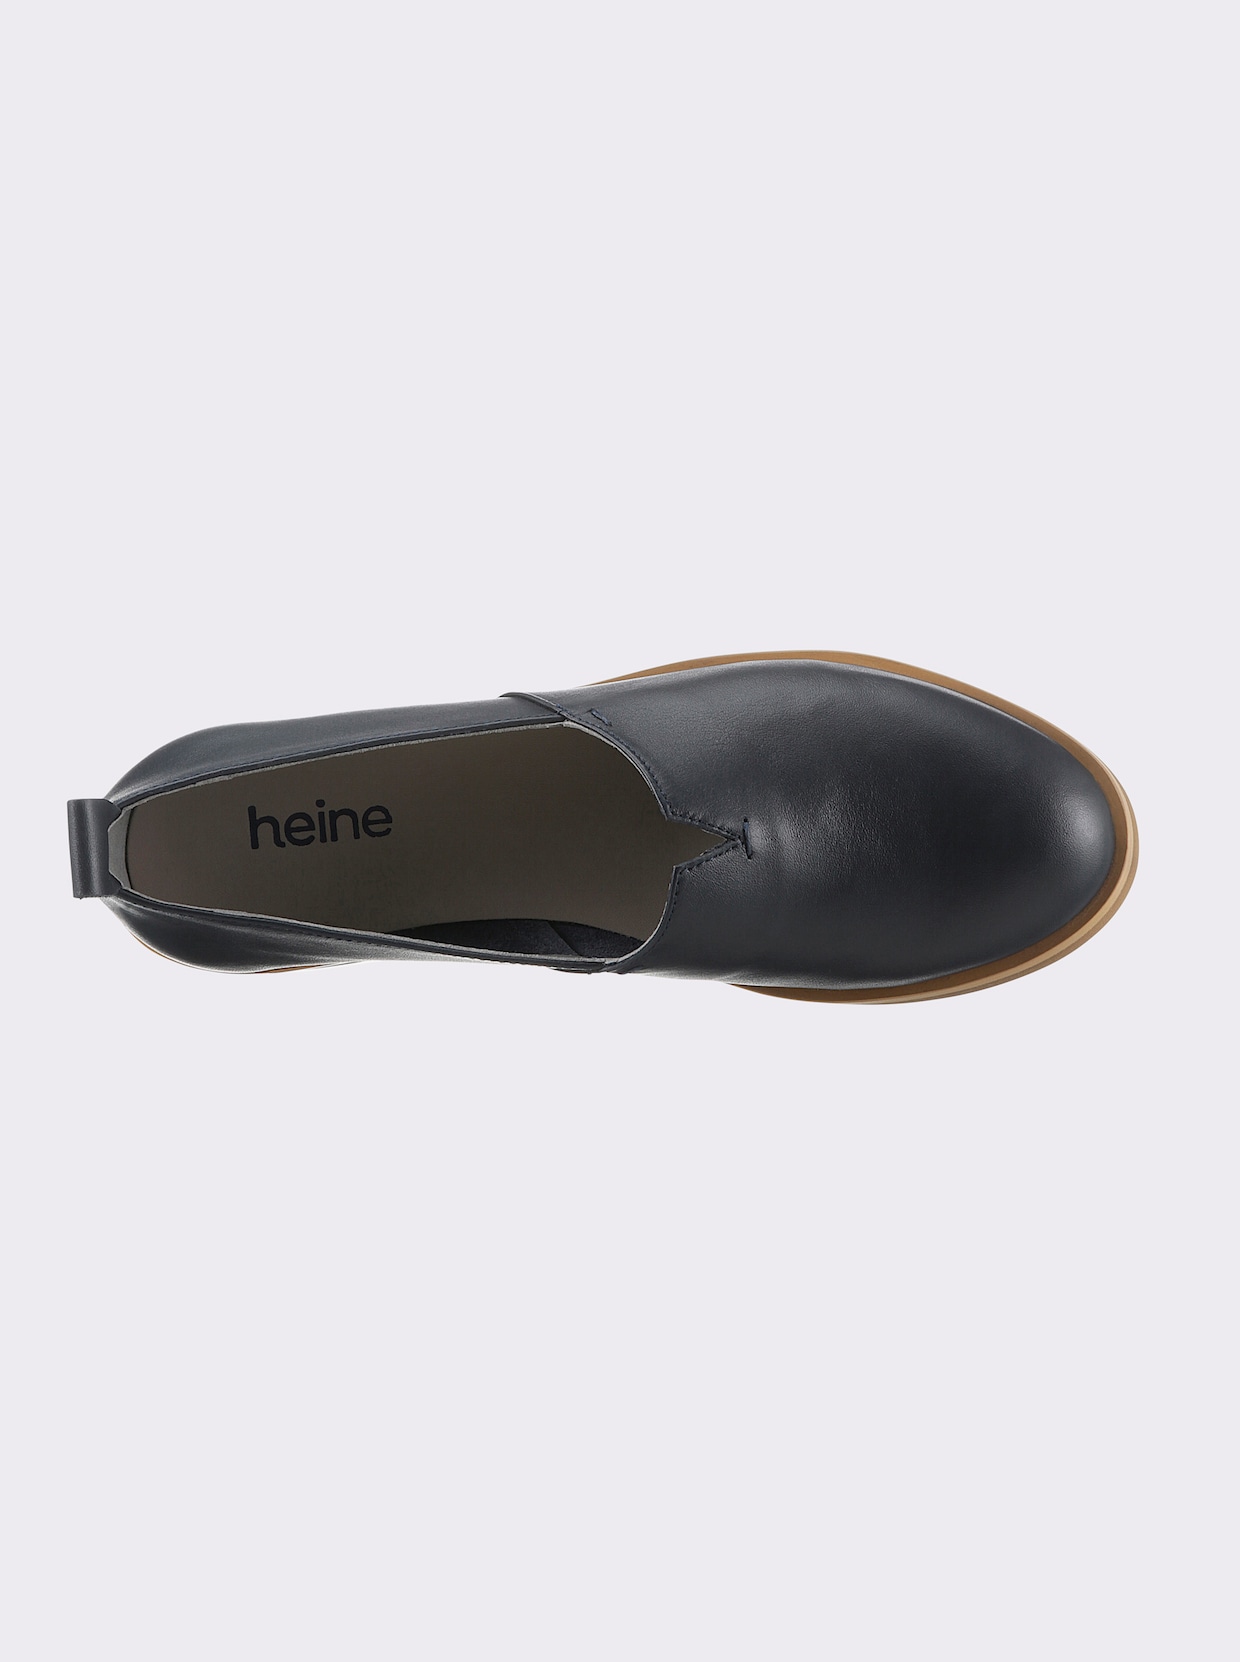 heine instapper - marine/metallic